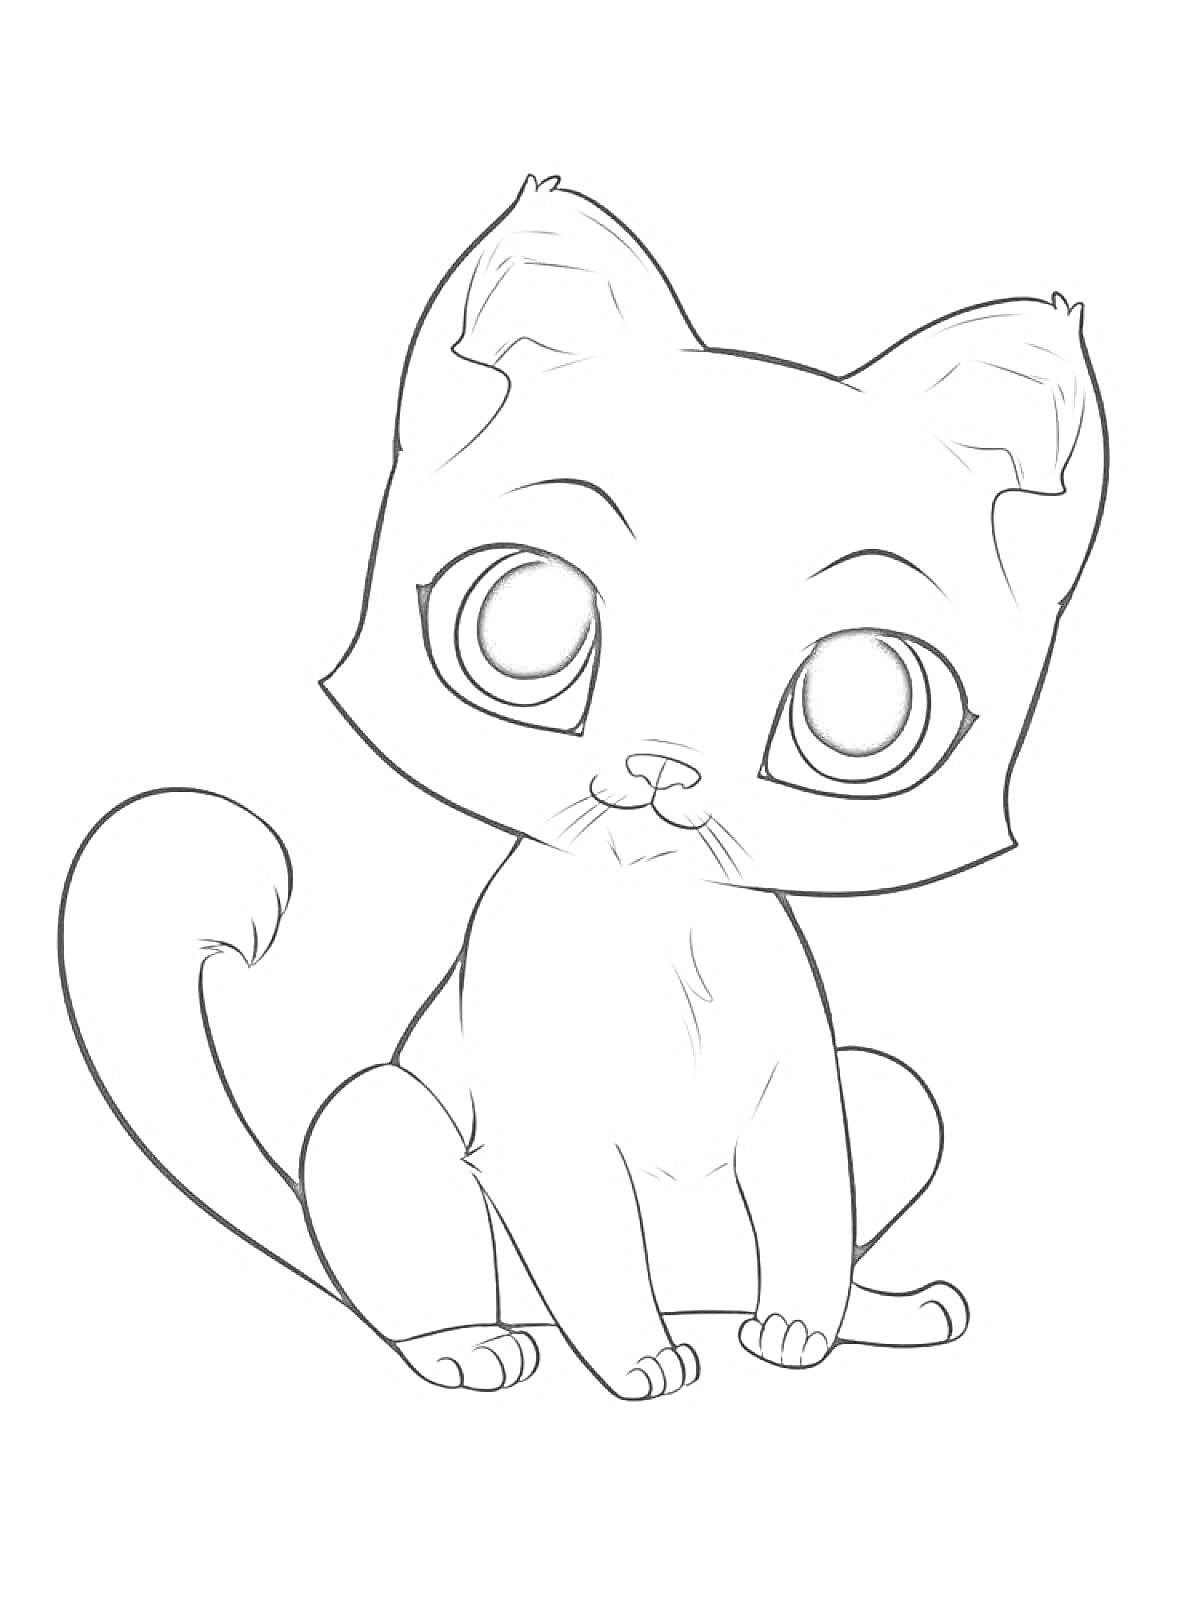 Раскраска Ласковый котик с большими глазами сидит, подняв хвост